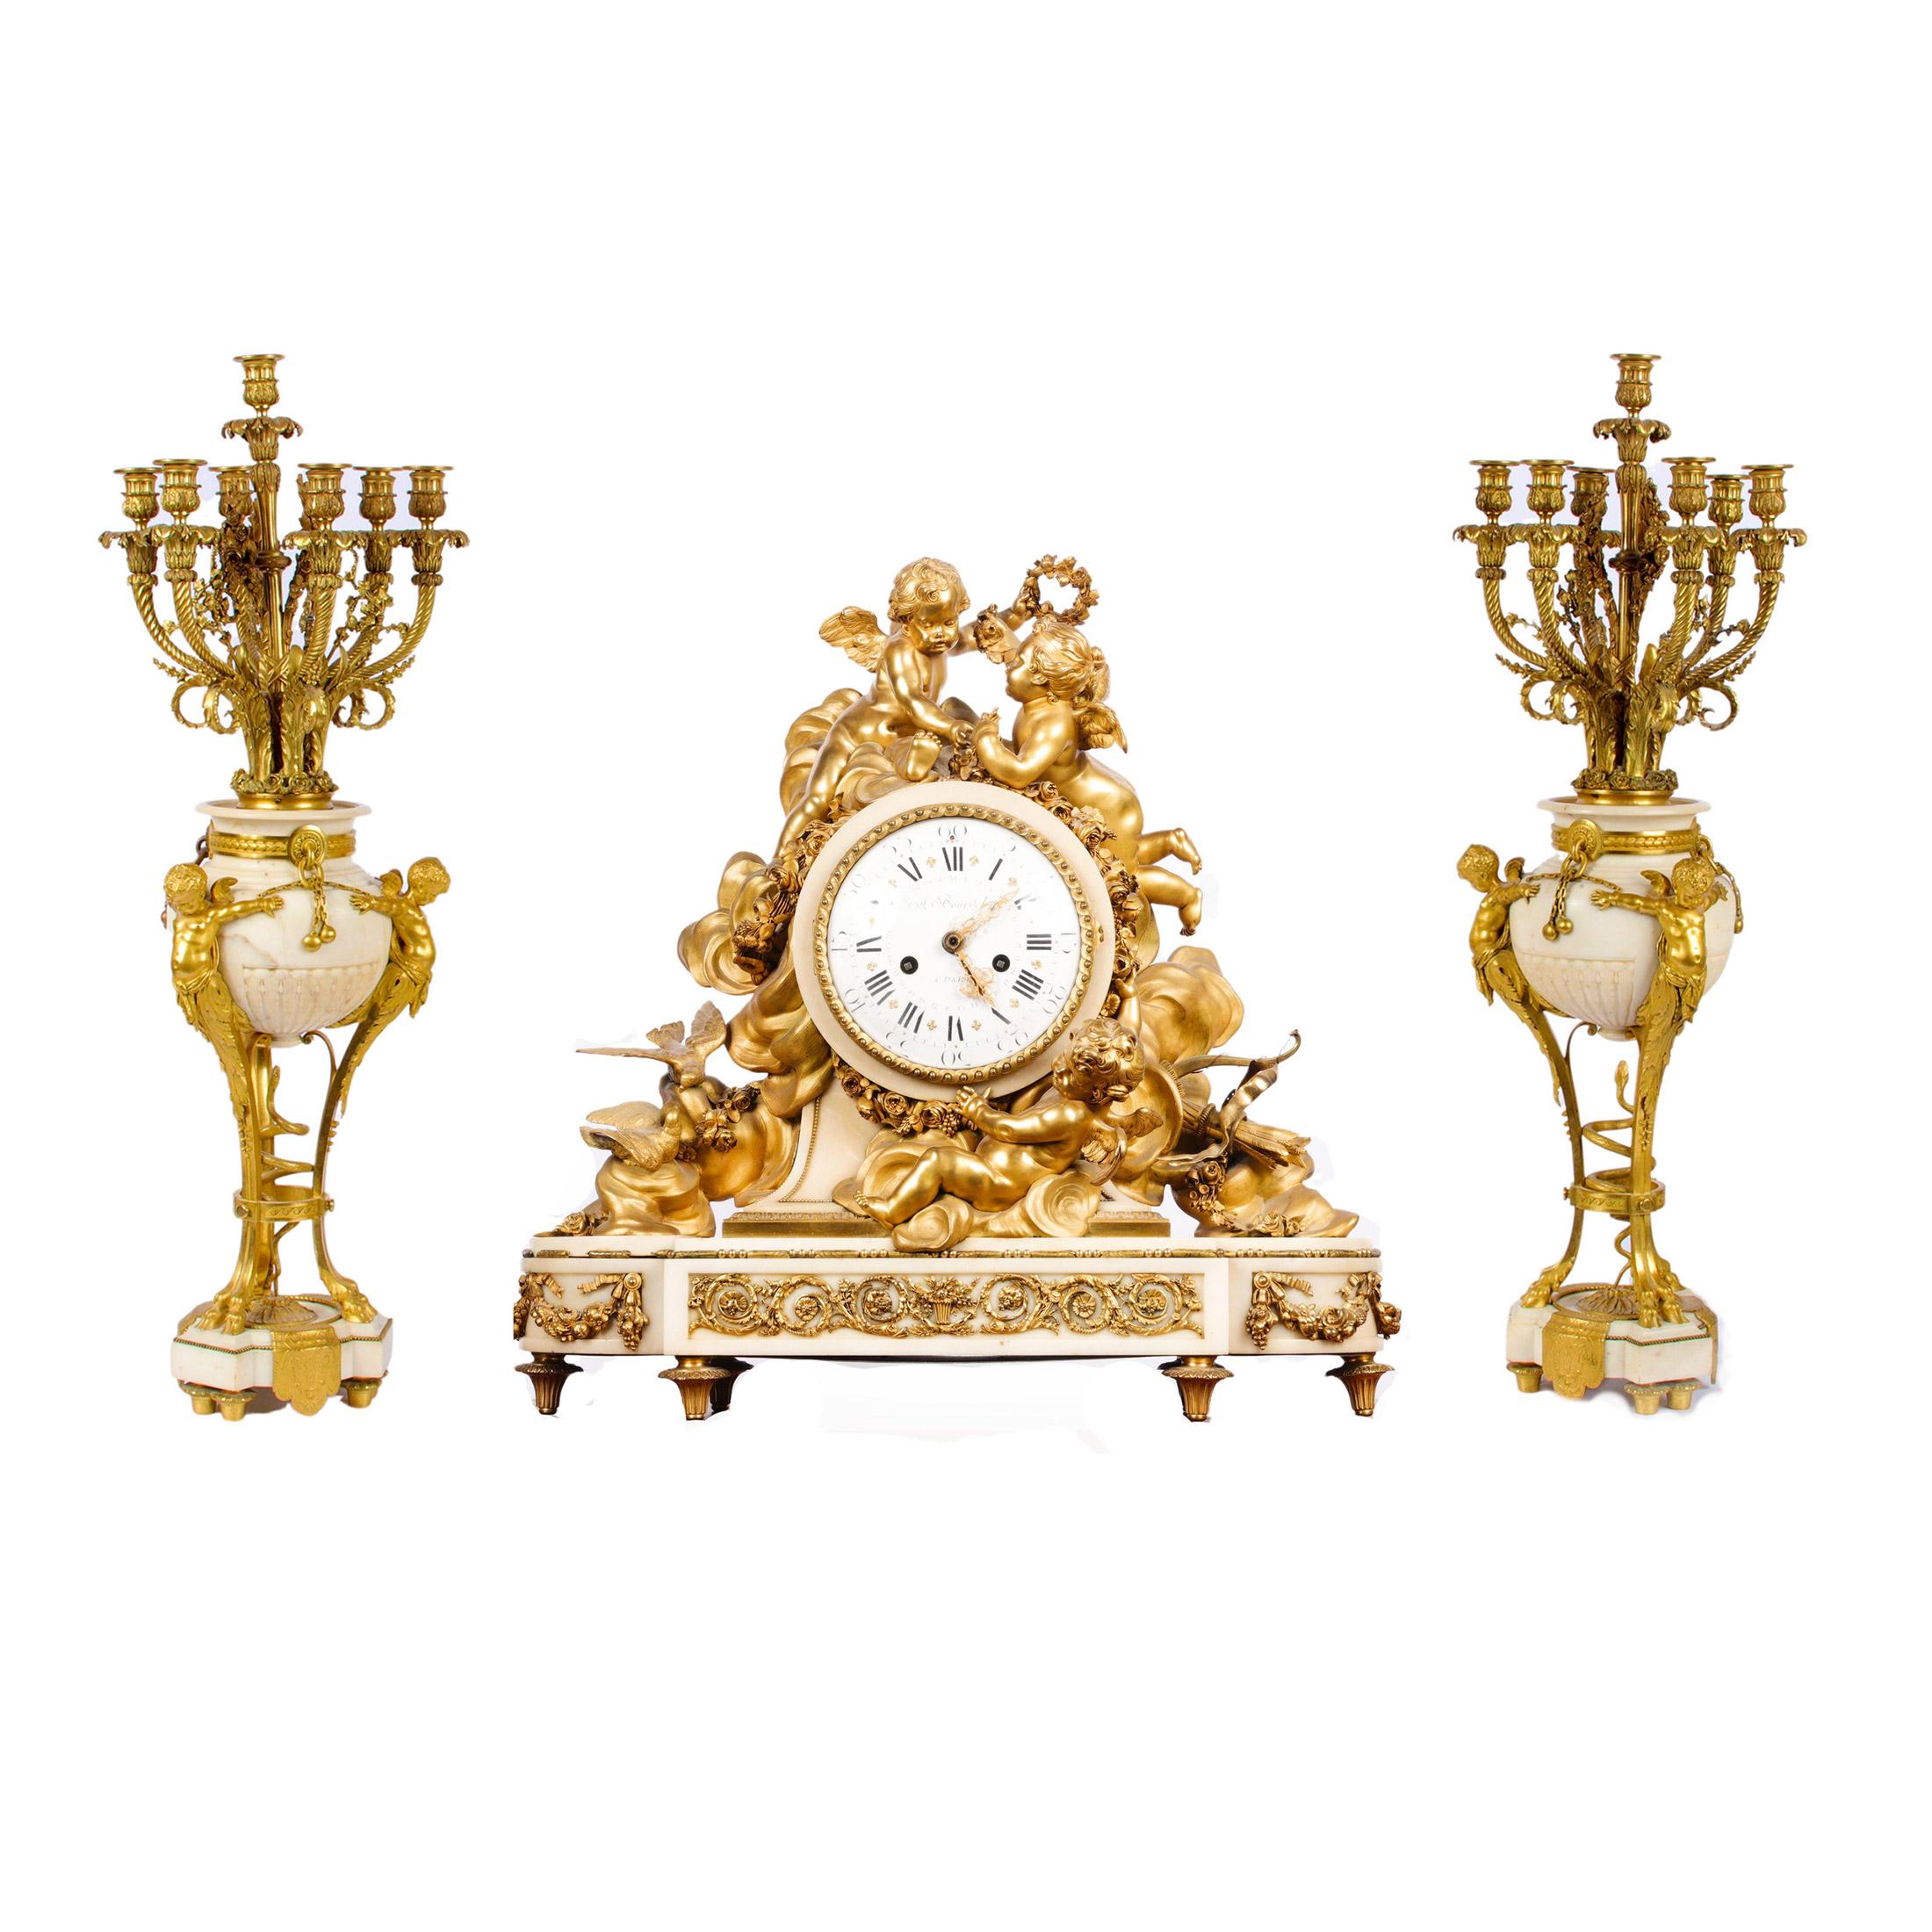 Hochbedeutende vergoldete Bronzeuhr im Louis-XVI-Stil von Beurdeley

Eine große, vergoldete Bronze und weißer Rokoko-Marmor im Stil des Louis XVI. wird von drei Putten aus Bronze überragt, die inmitten von Wolken mit Liebesvögeln und Amors Bogen